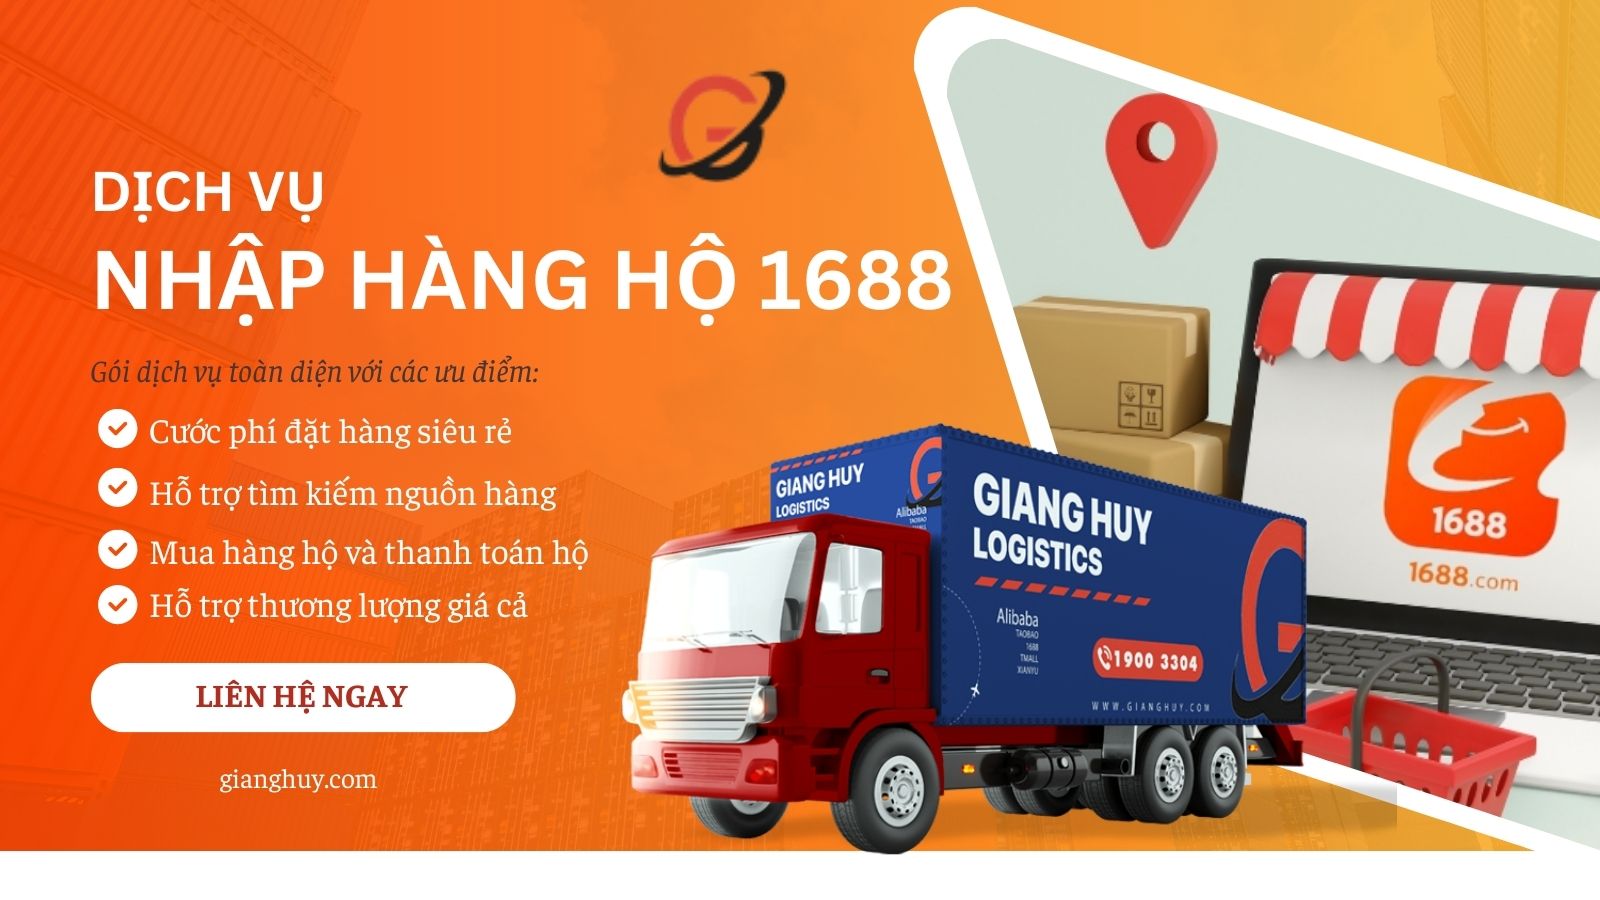 Order hàng 1688 thông qua Giang Huy Logistics